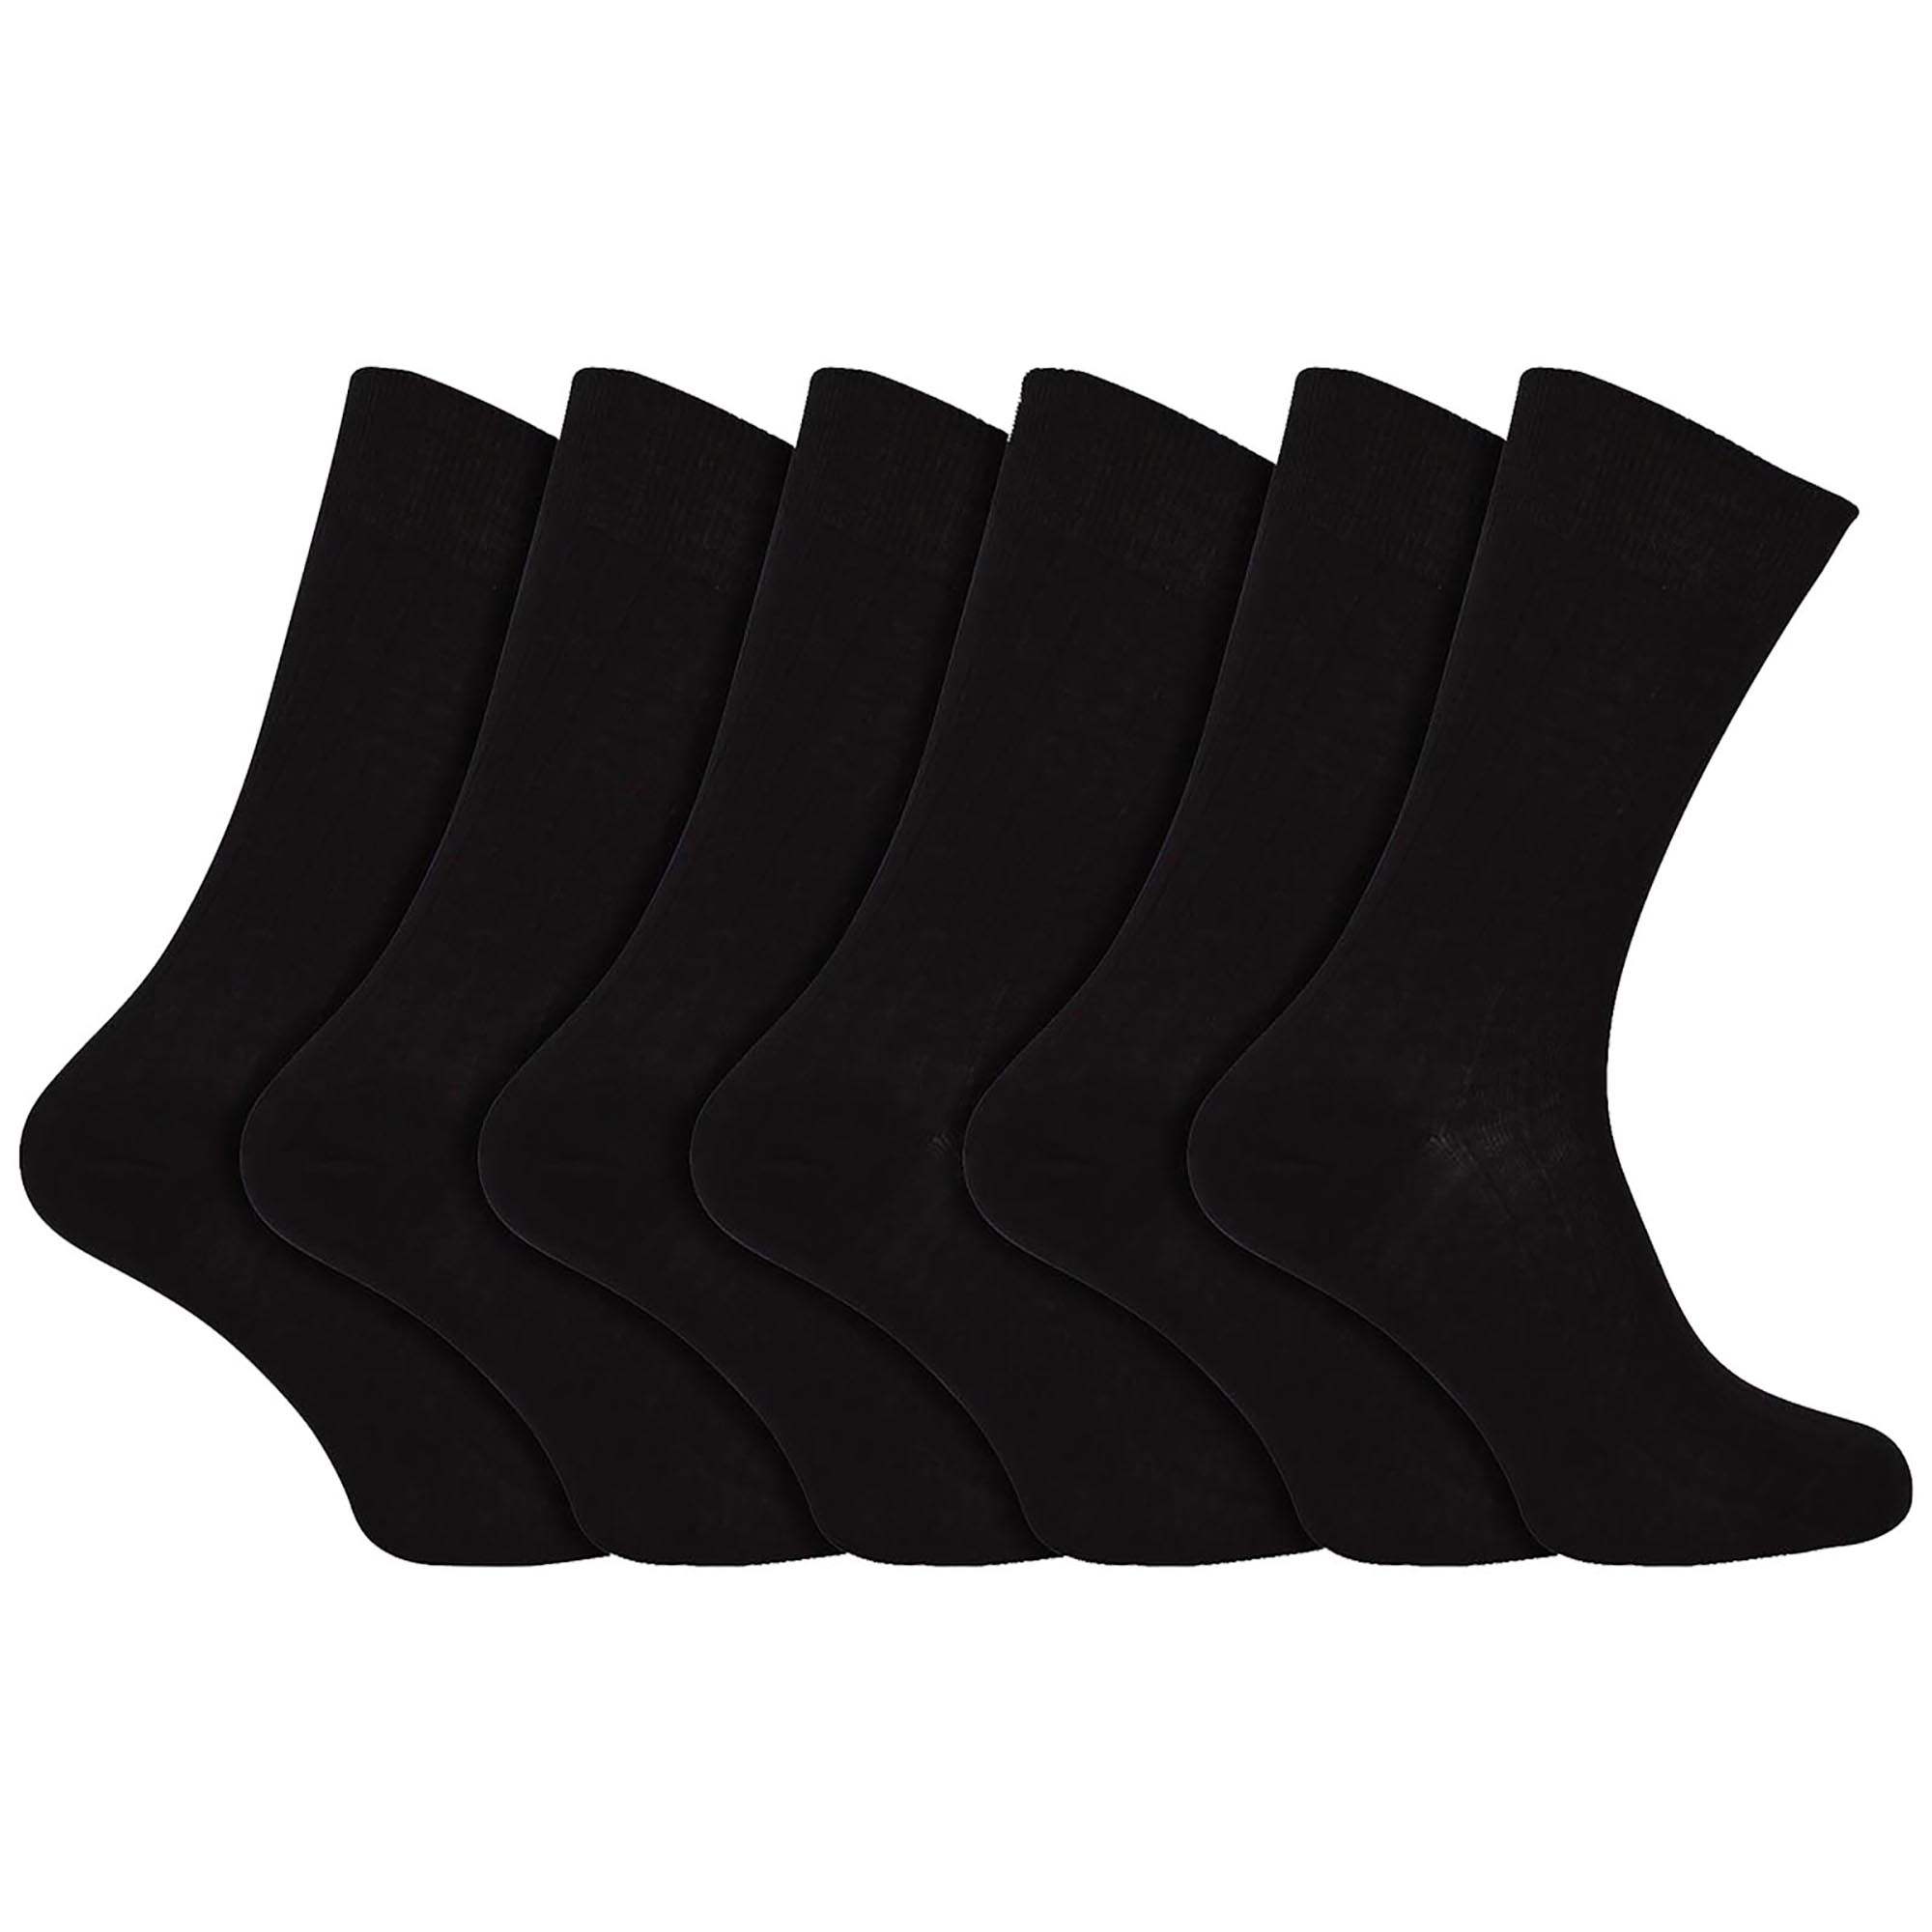 100% Egyptian Cotton Socks For Men | Black Socks In 3 Sizes